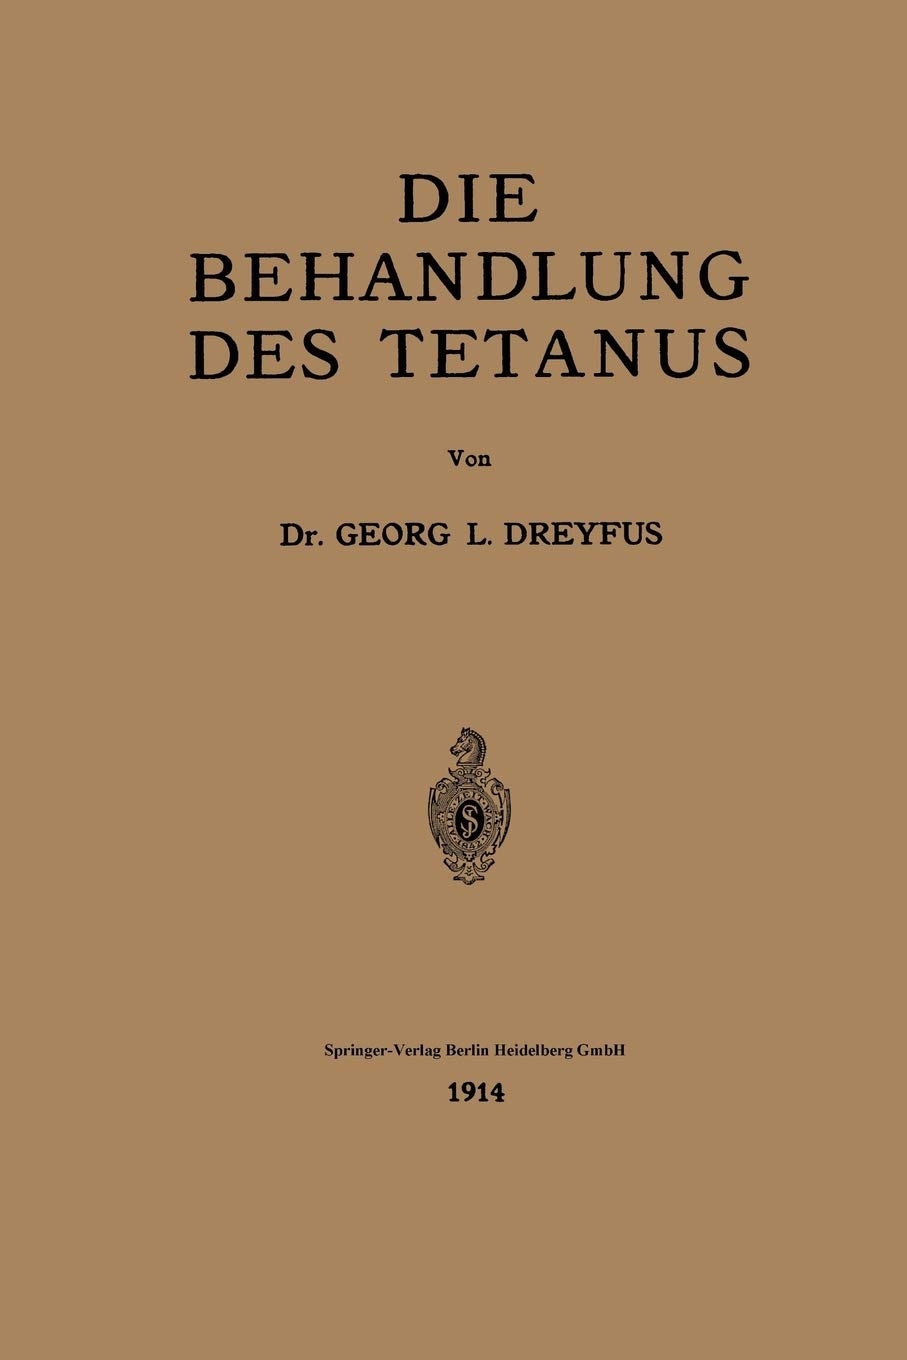 Die Behandlung des Tetanus (German Edition)